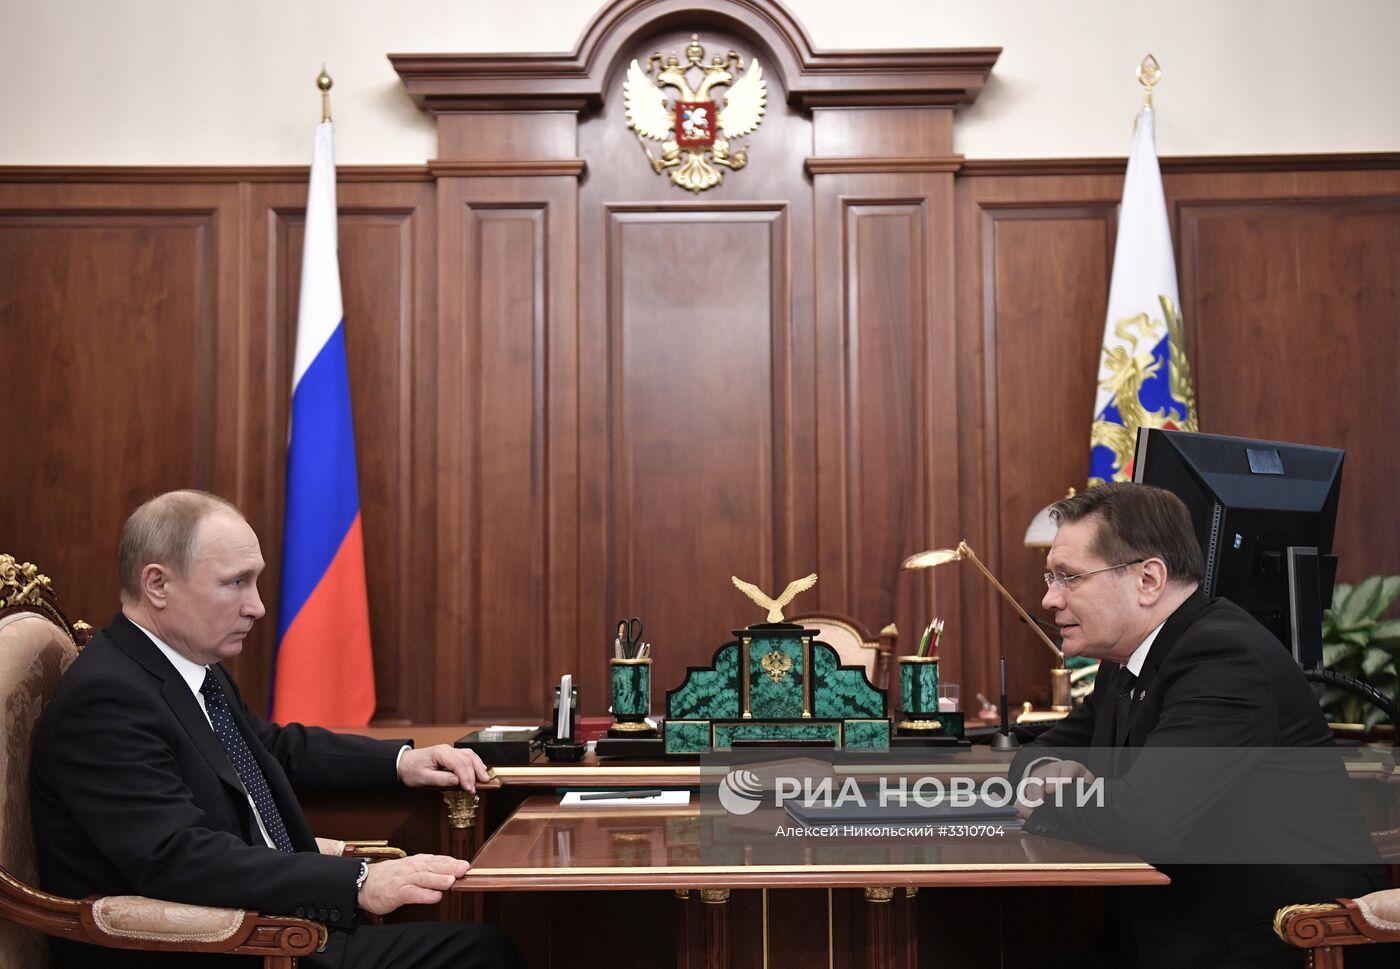 Президент РФ В. Путин встретился с главой госкорпорации "Росатом" А. Лихачевым